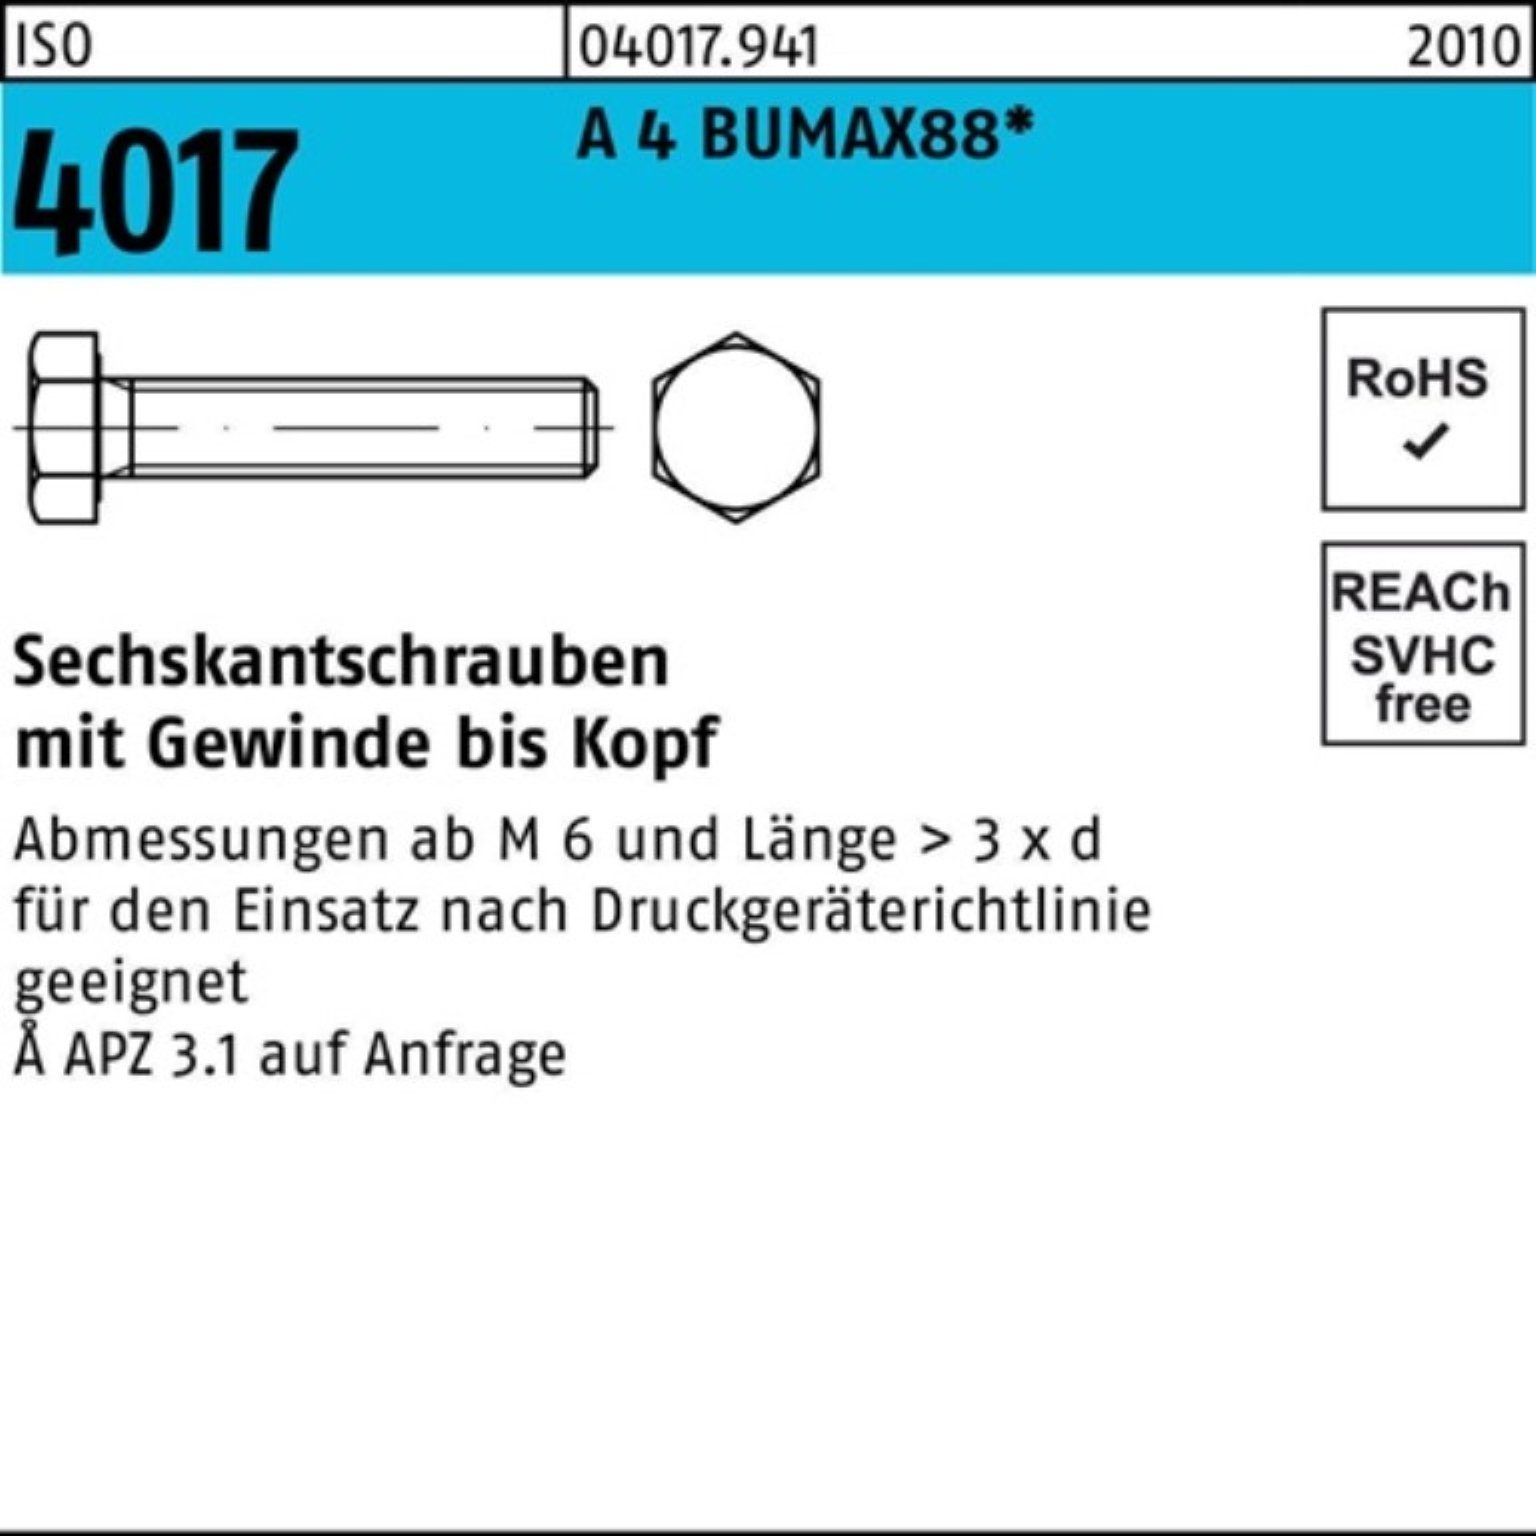 Bufab 10 Pack Sechskantschraube 100er A Sechskantschraube VG 4017 50 BUMAX88 Stück M20x 4 ISO